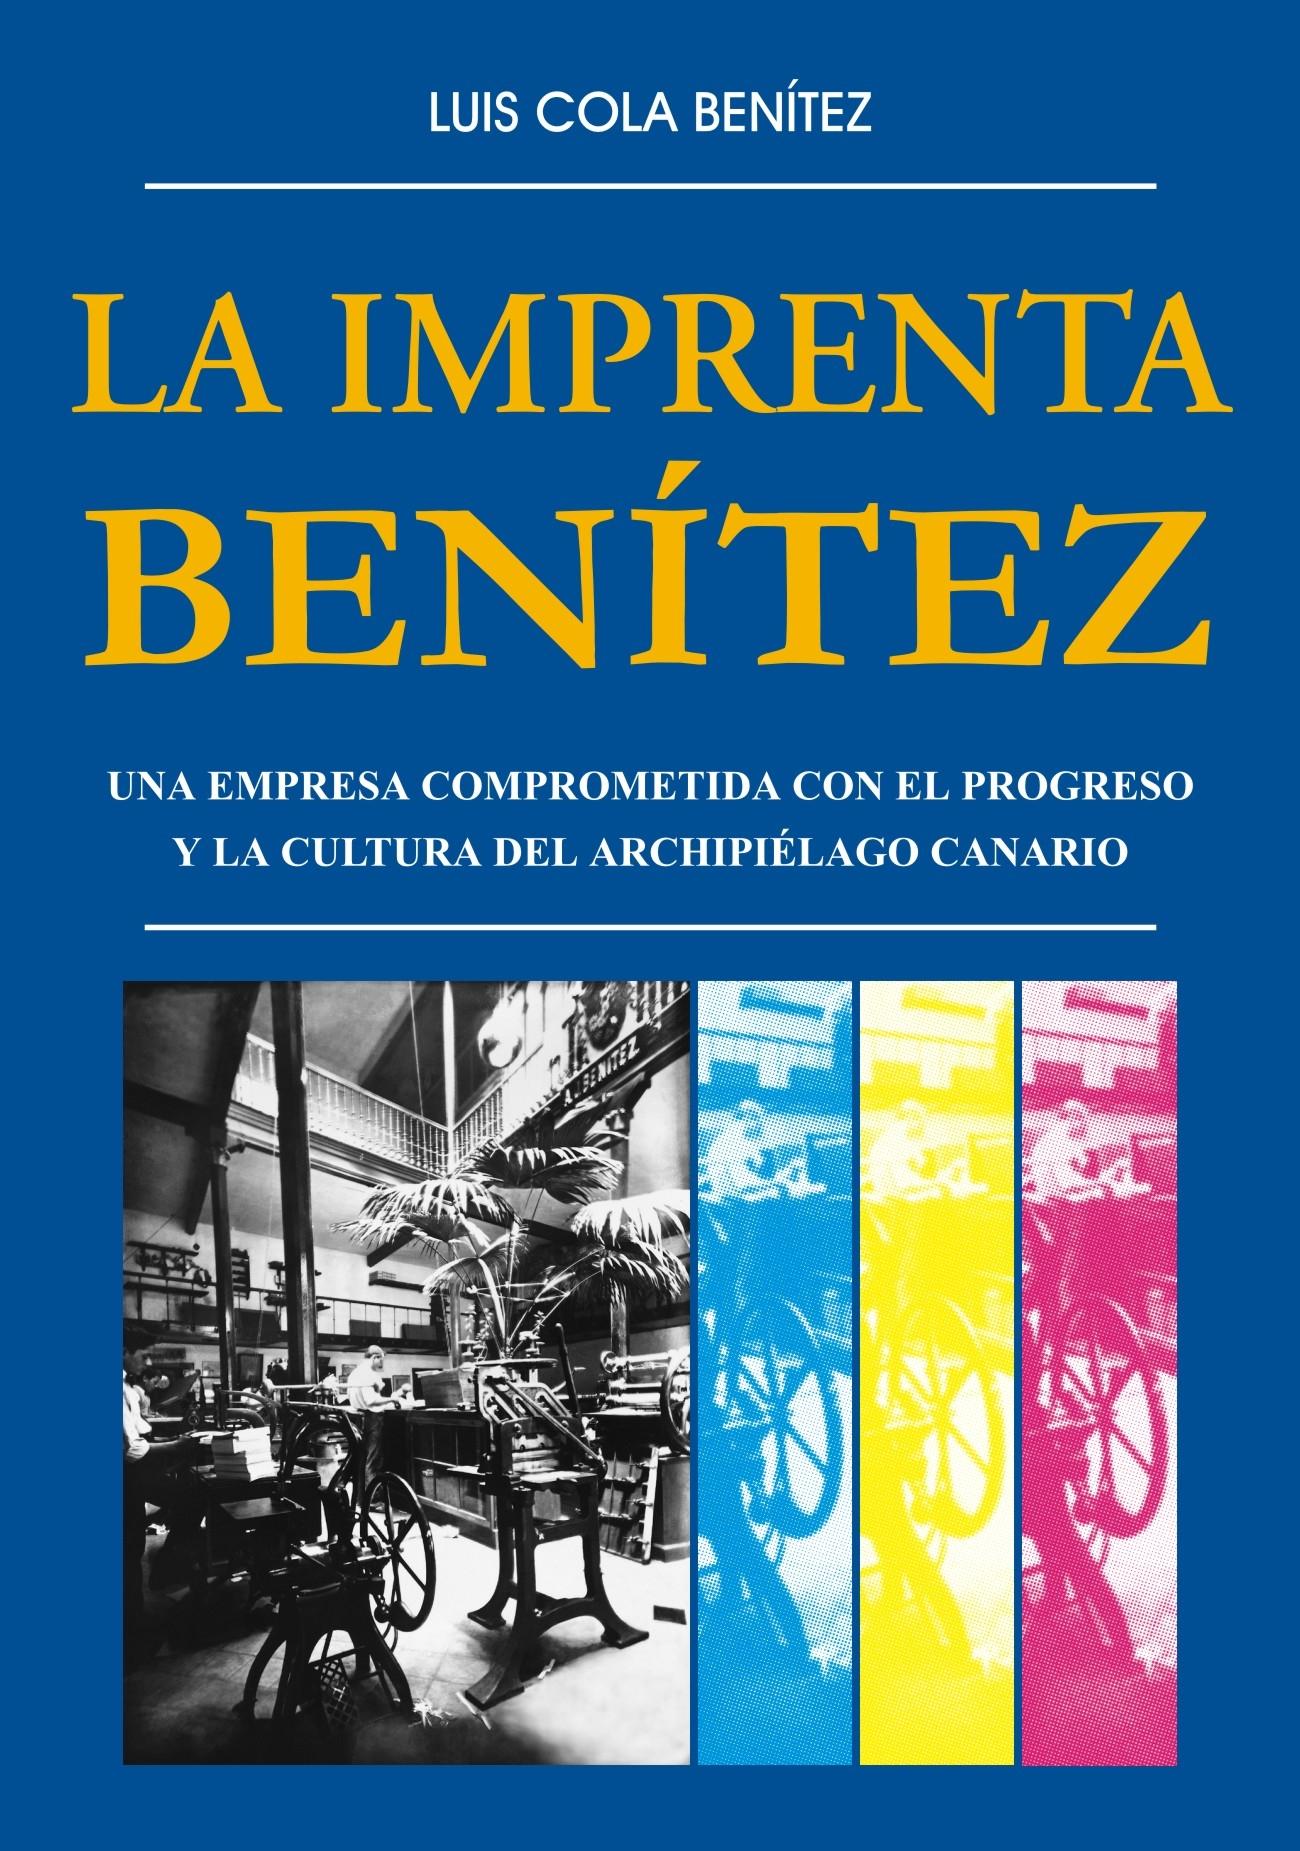 La imprenta Benítez "Una empresa comprometida con el progreso y la cultura del archipiélago canario". 